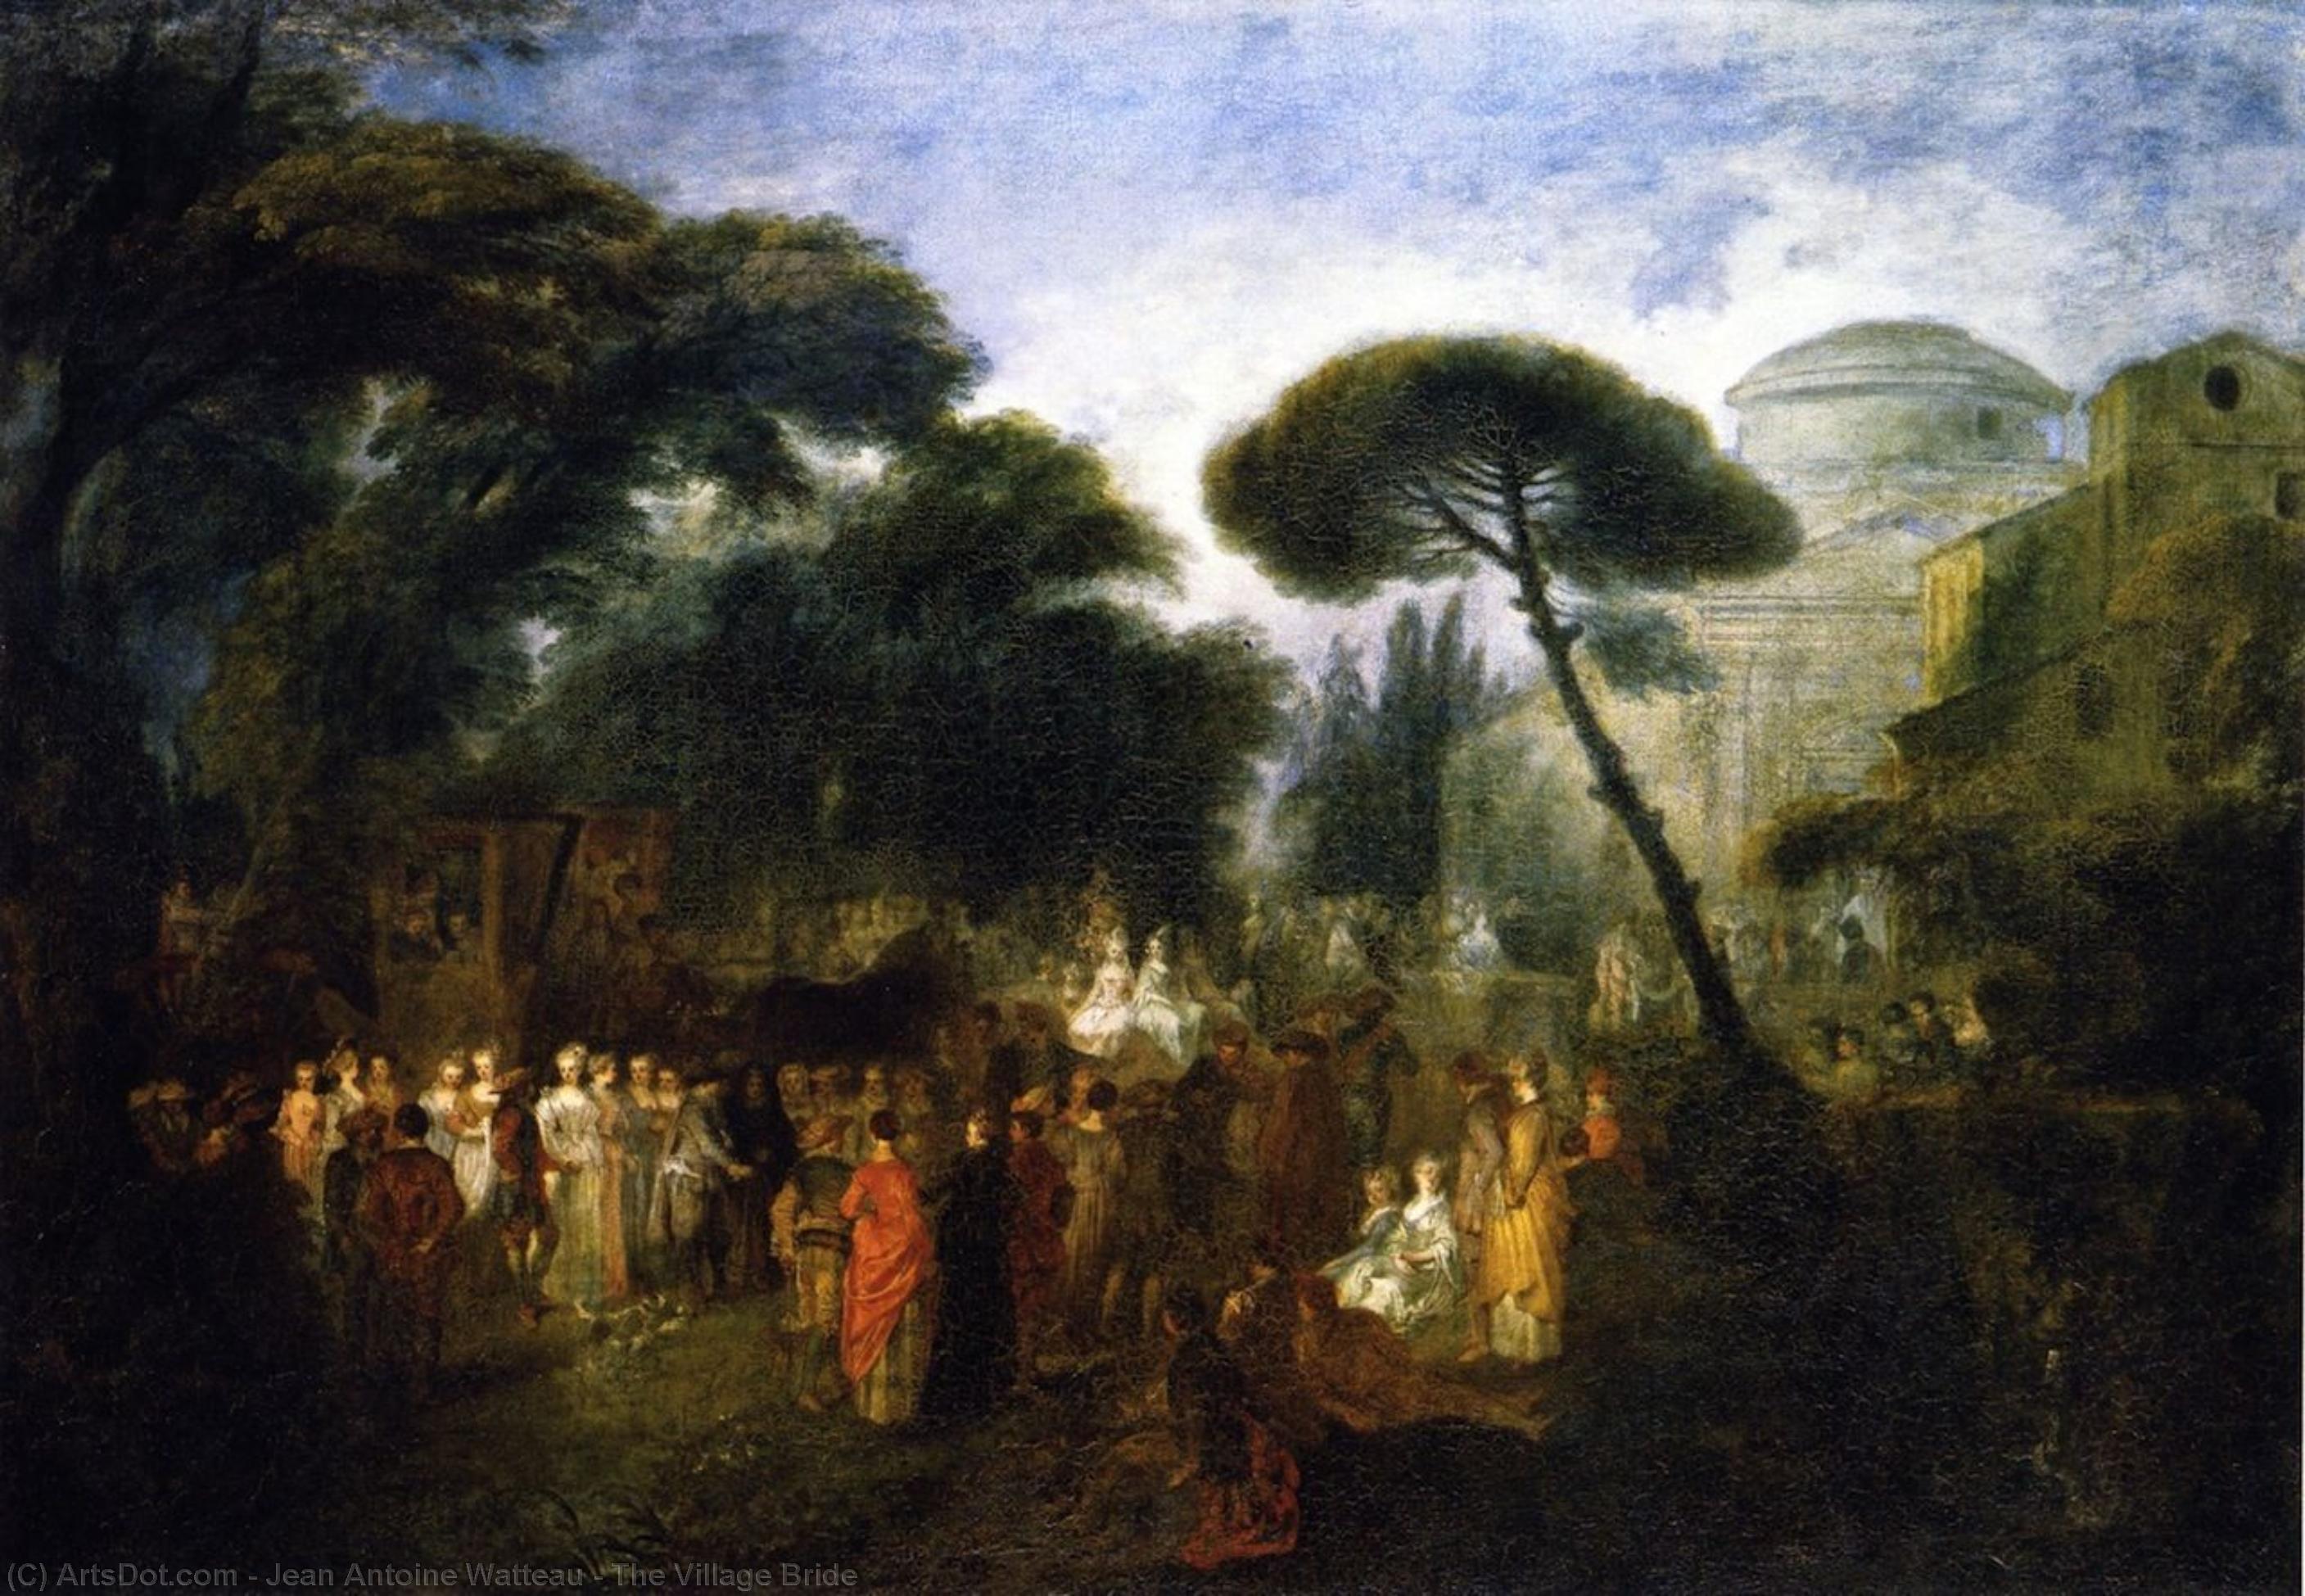 WikiOO.org - 백과 사전 - 회화, 삽화 Jean Antoine Watteau - The Village Bride